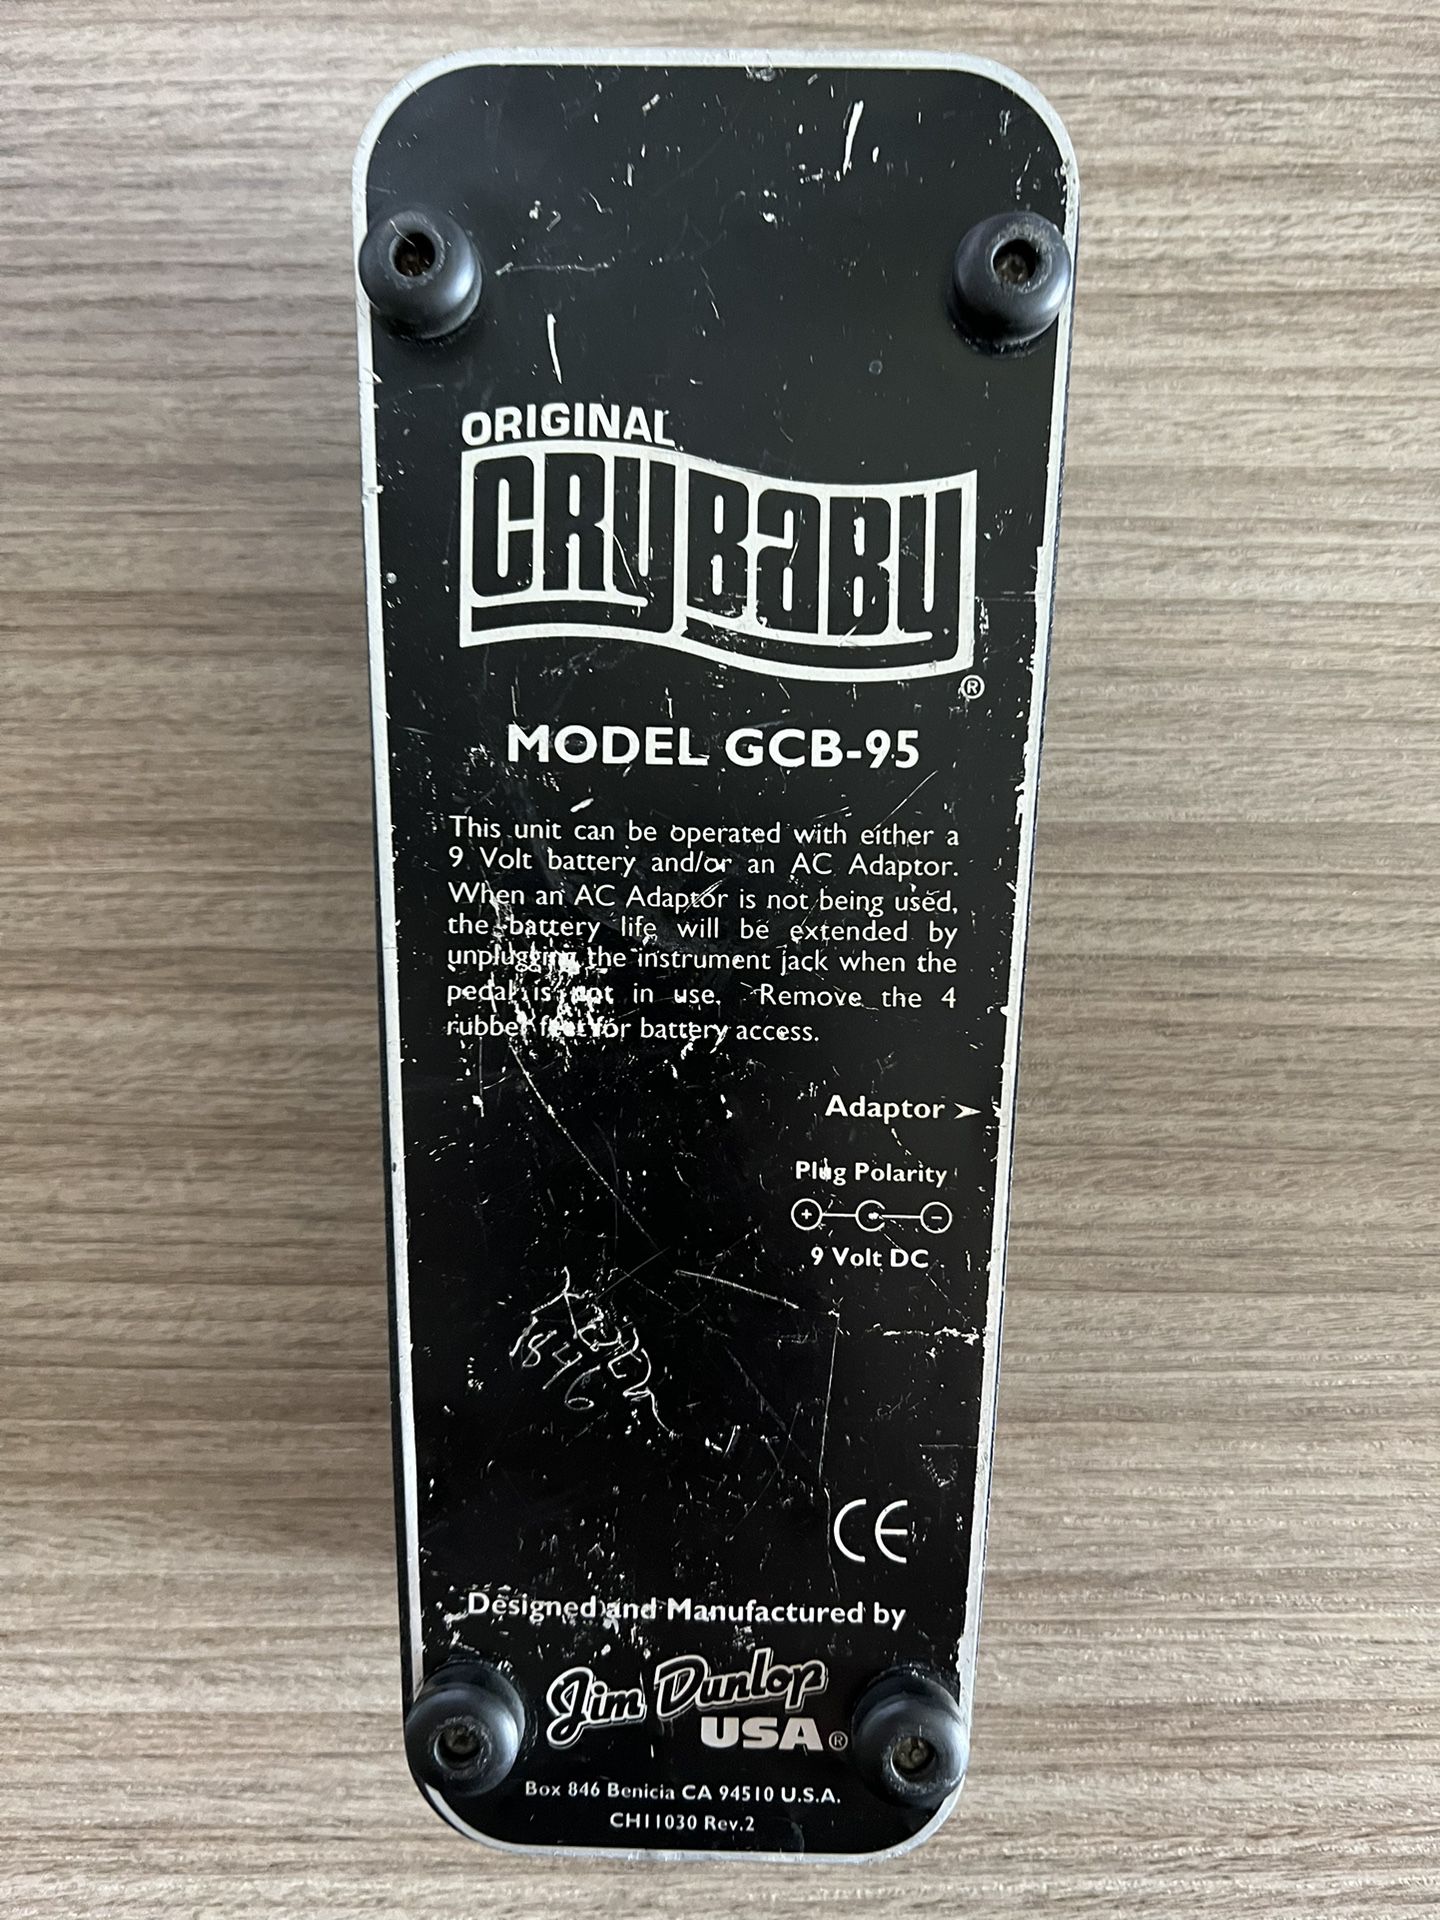 ‘94s Vintage Original Crybaby GCB95 $90obo